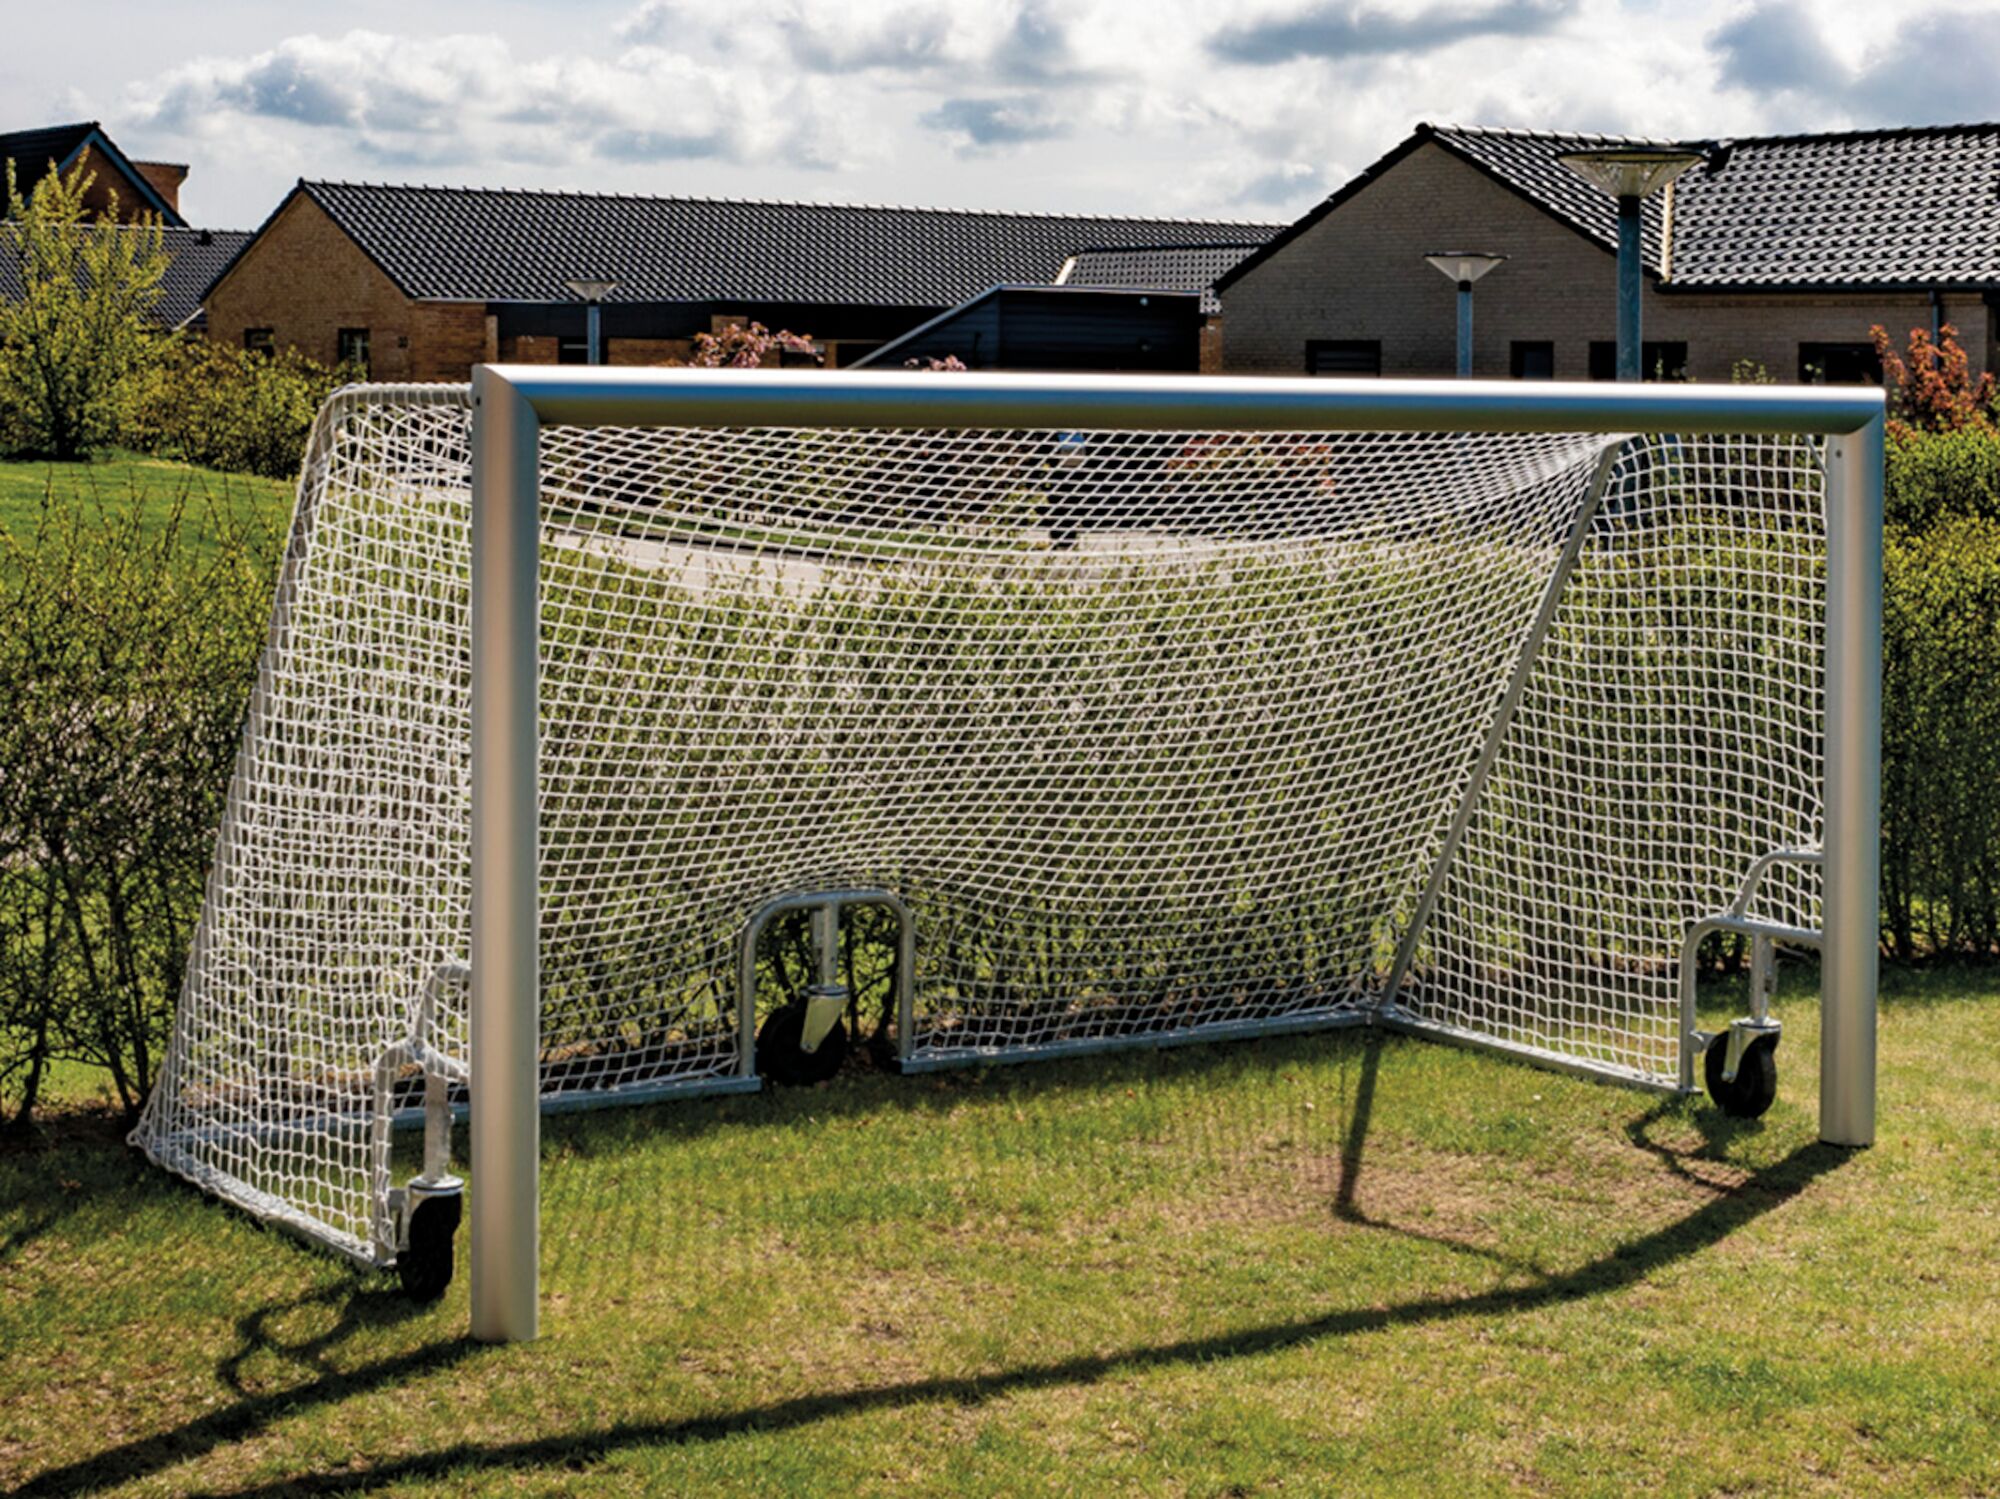 Mechanics antage stamtavle Fodboldmål til haven 5 mands i aluminium, et smart mål til haven